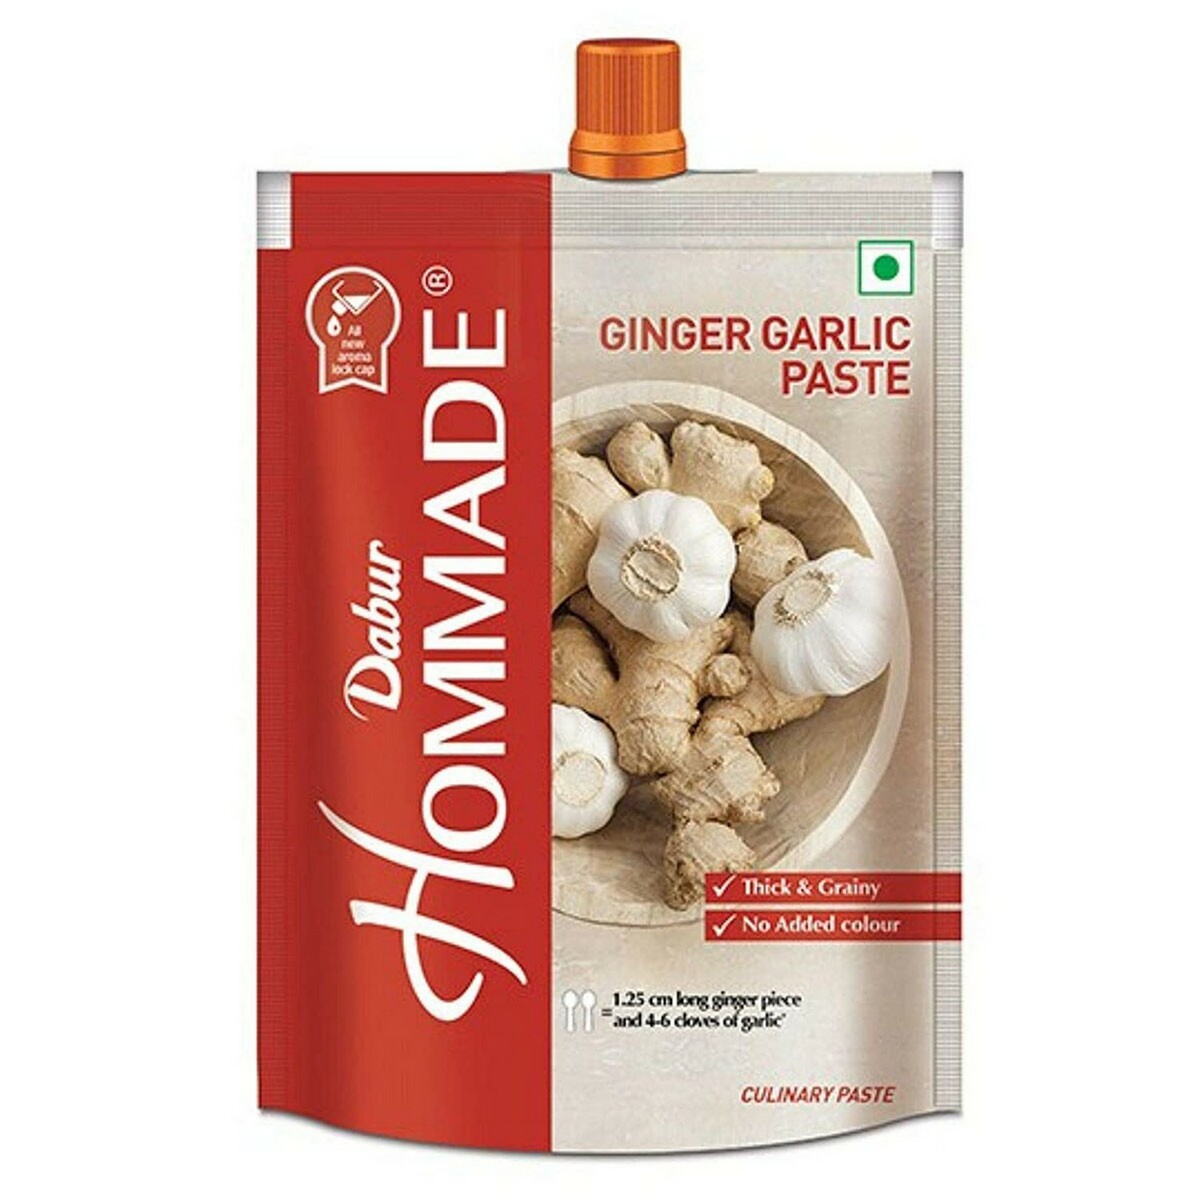 Hommade Ginger Garlic Paste 200g